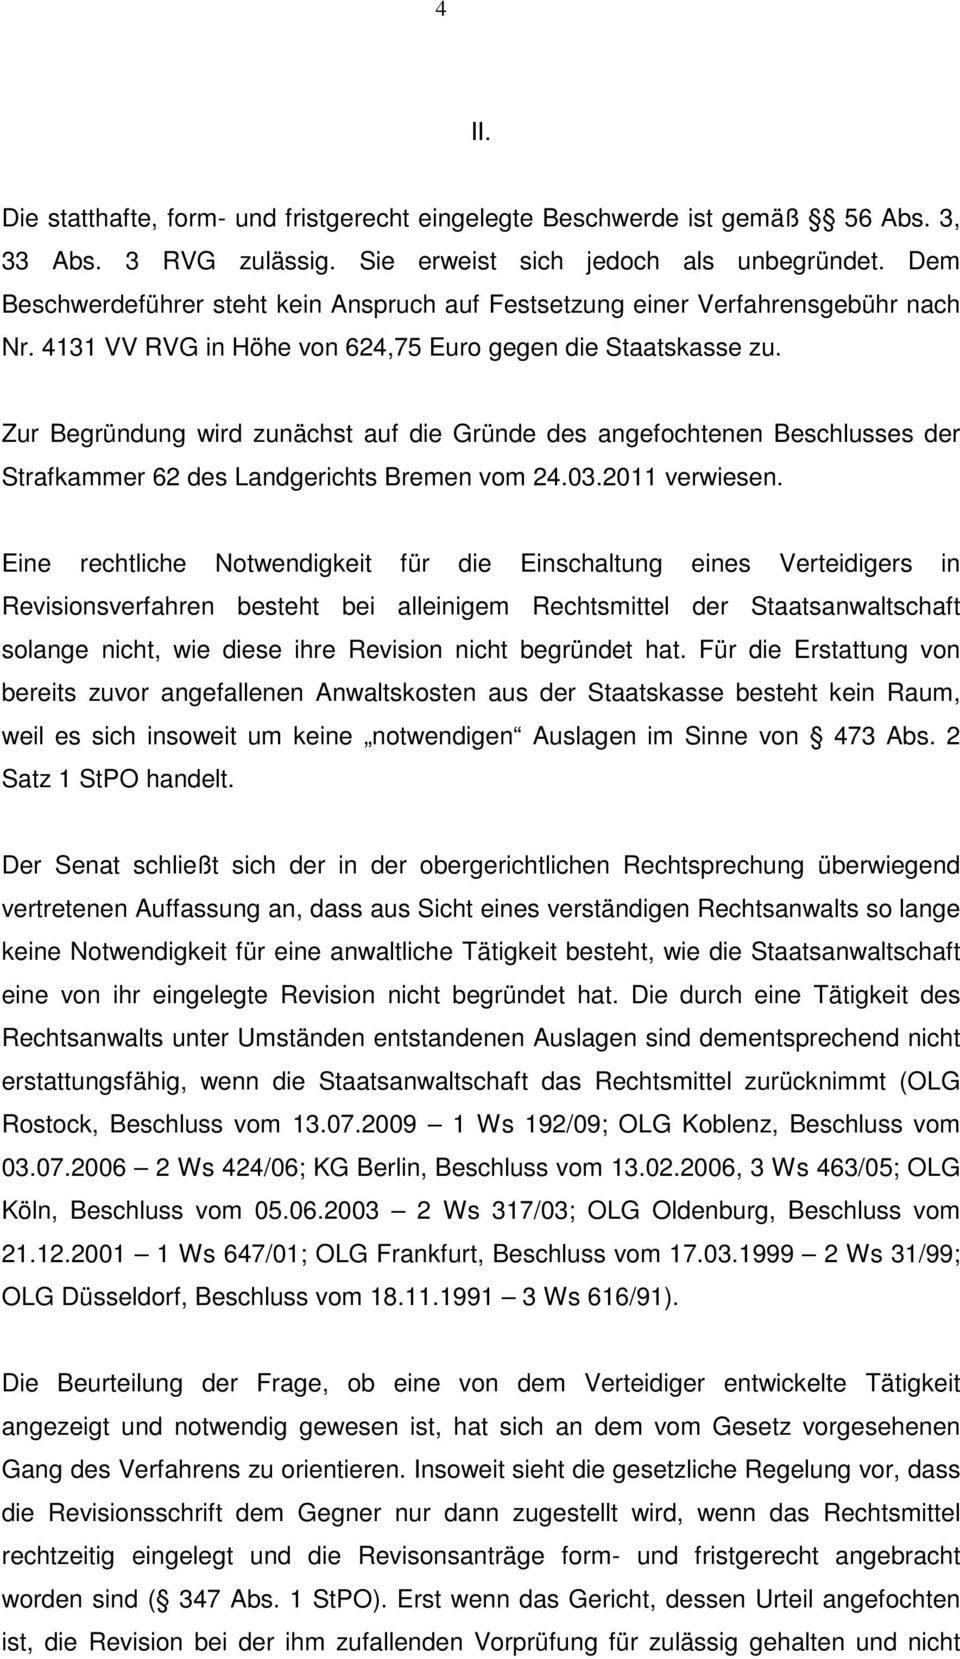 Zur Begründung wird zunächst auf die Gründe des angefochtenen Beschlusses der Strafkammer 62 des Landgerichts Bremen vom 24.03.2011 verwiesen.